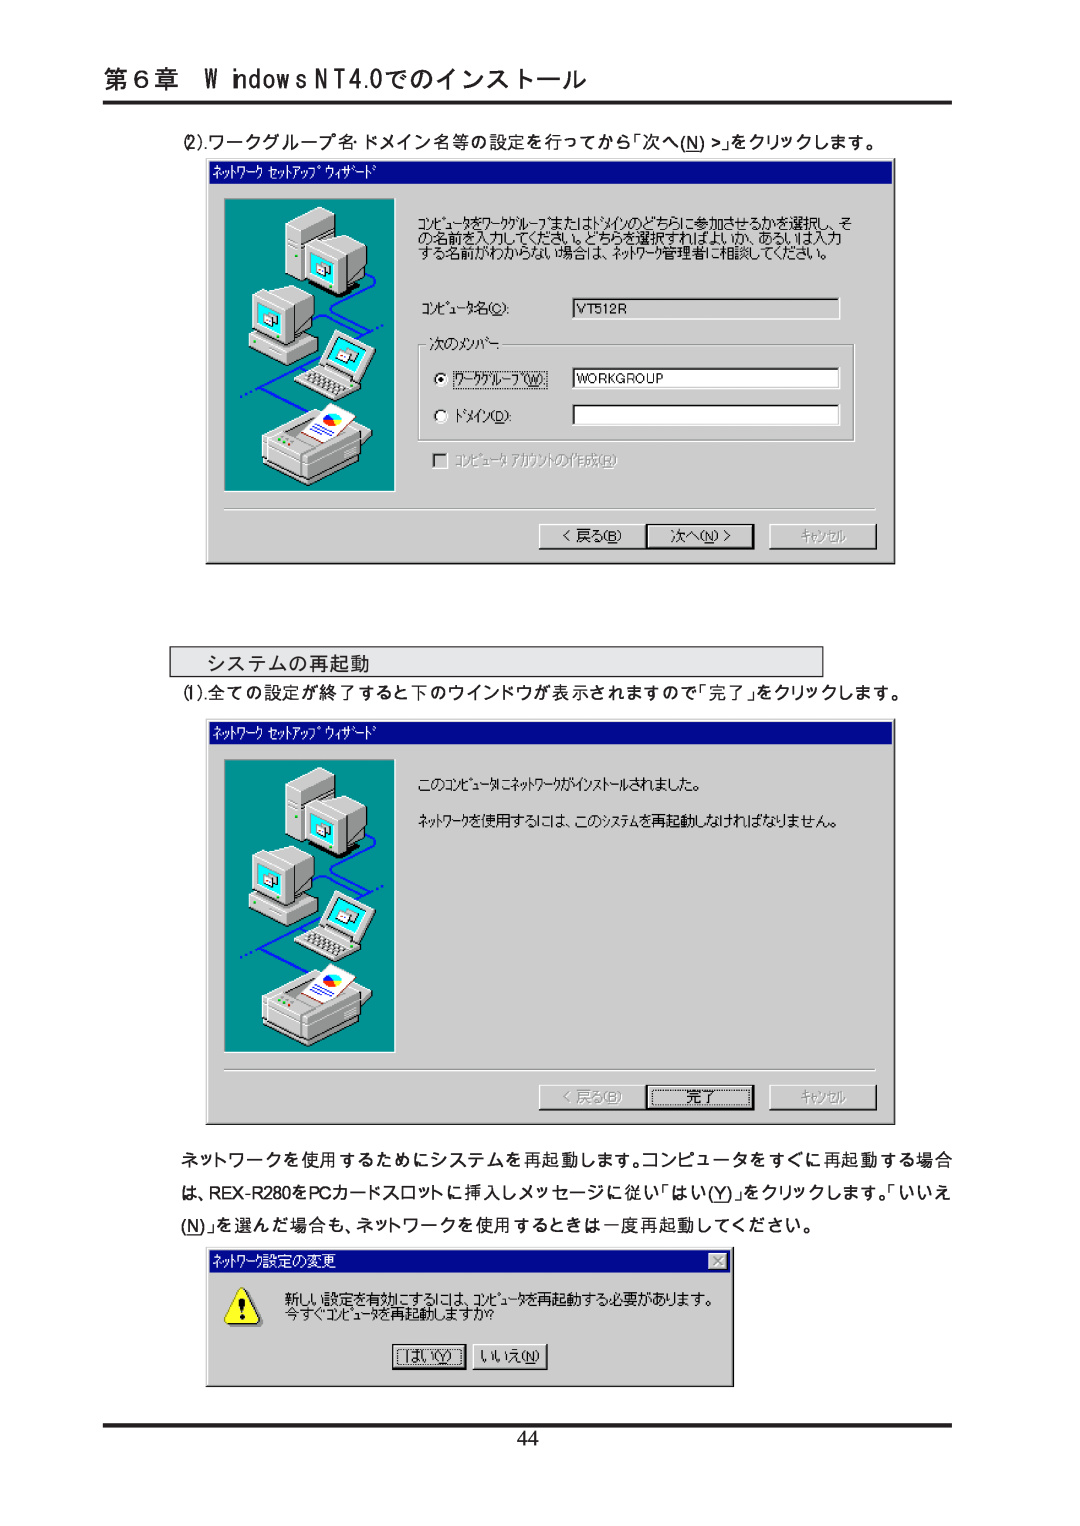 Ratoc Systems REX-R280 manual 第６章 Windows NT4.0でのインストール, システムの再起動, 2.ワークグループ名・ドメイン名等の設定を行ってから「次へN 」をクリックします。 